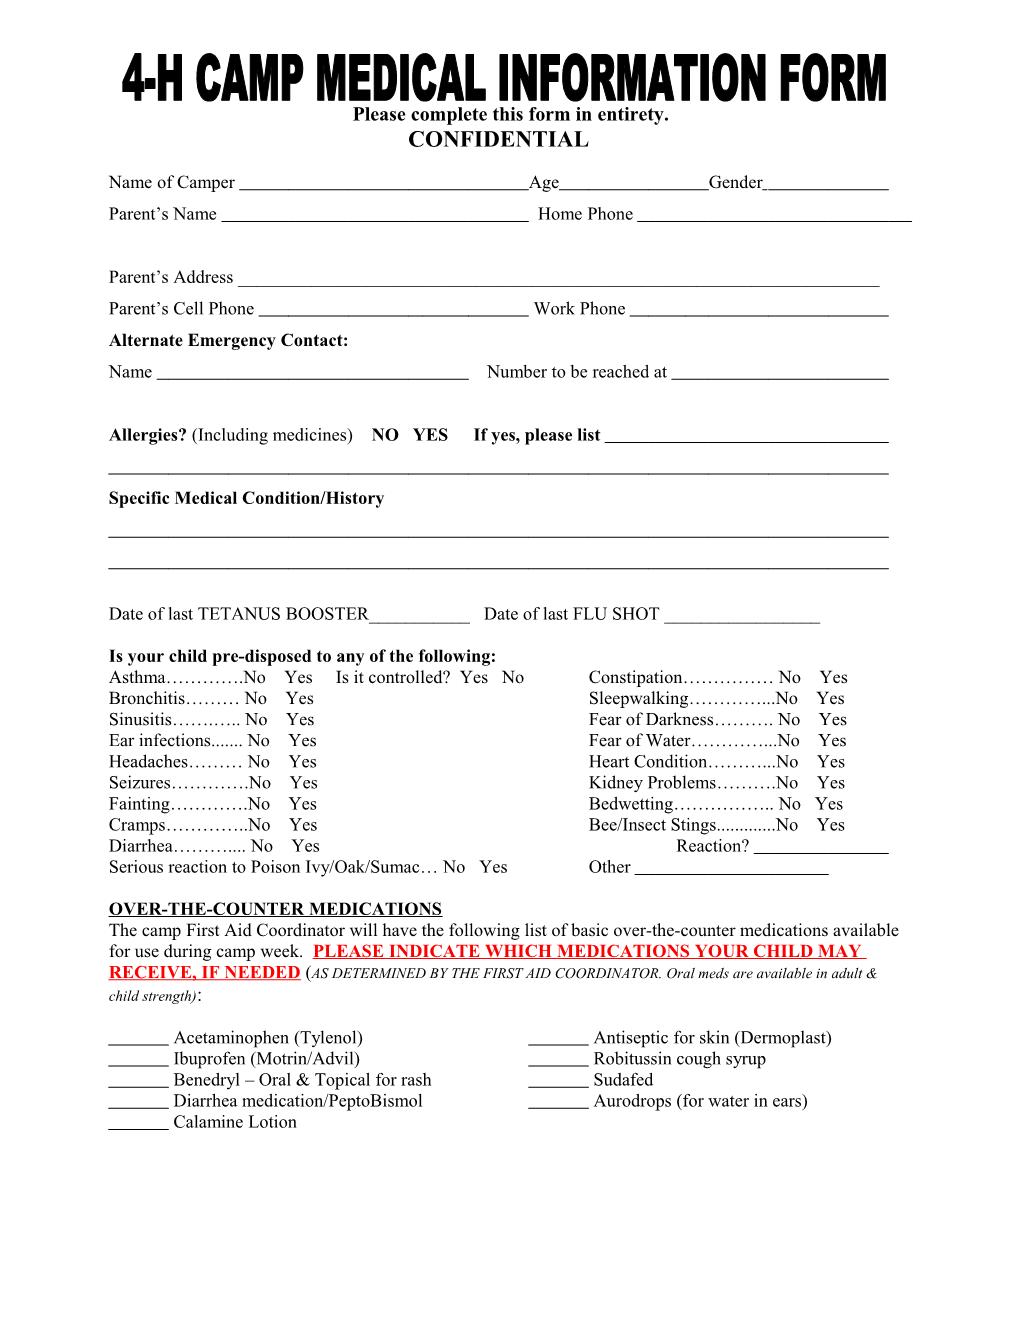 4-H Camp Medication Information Form